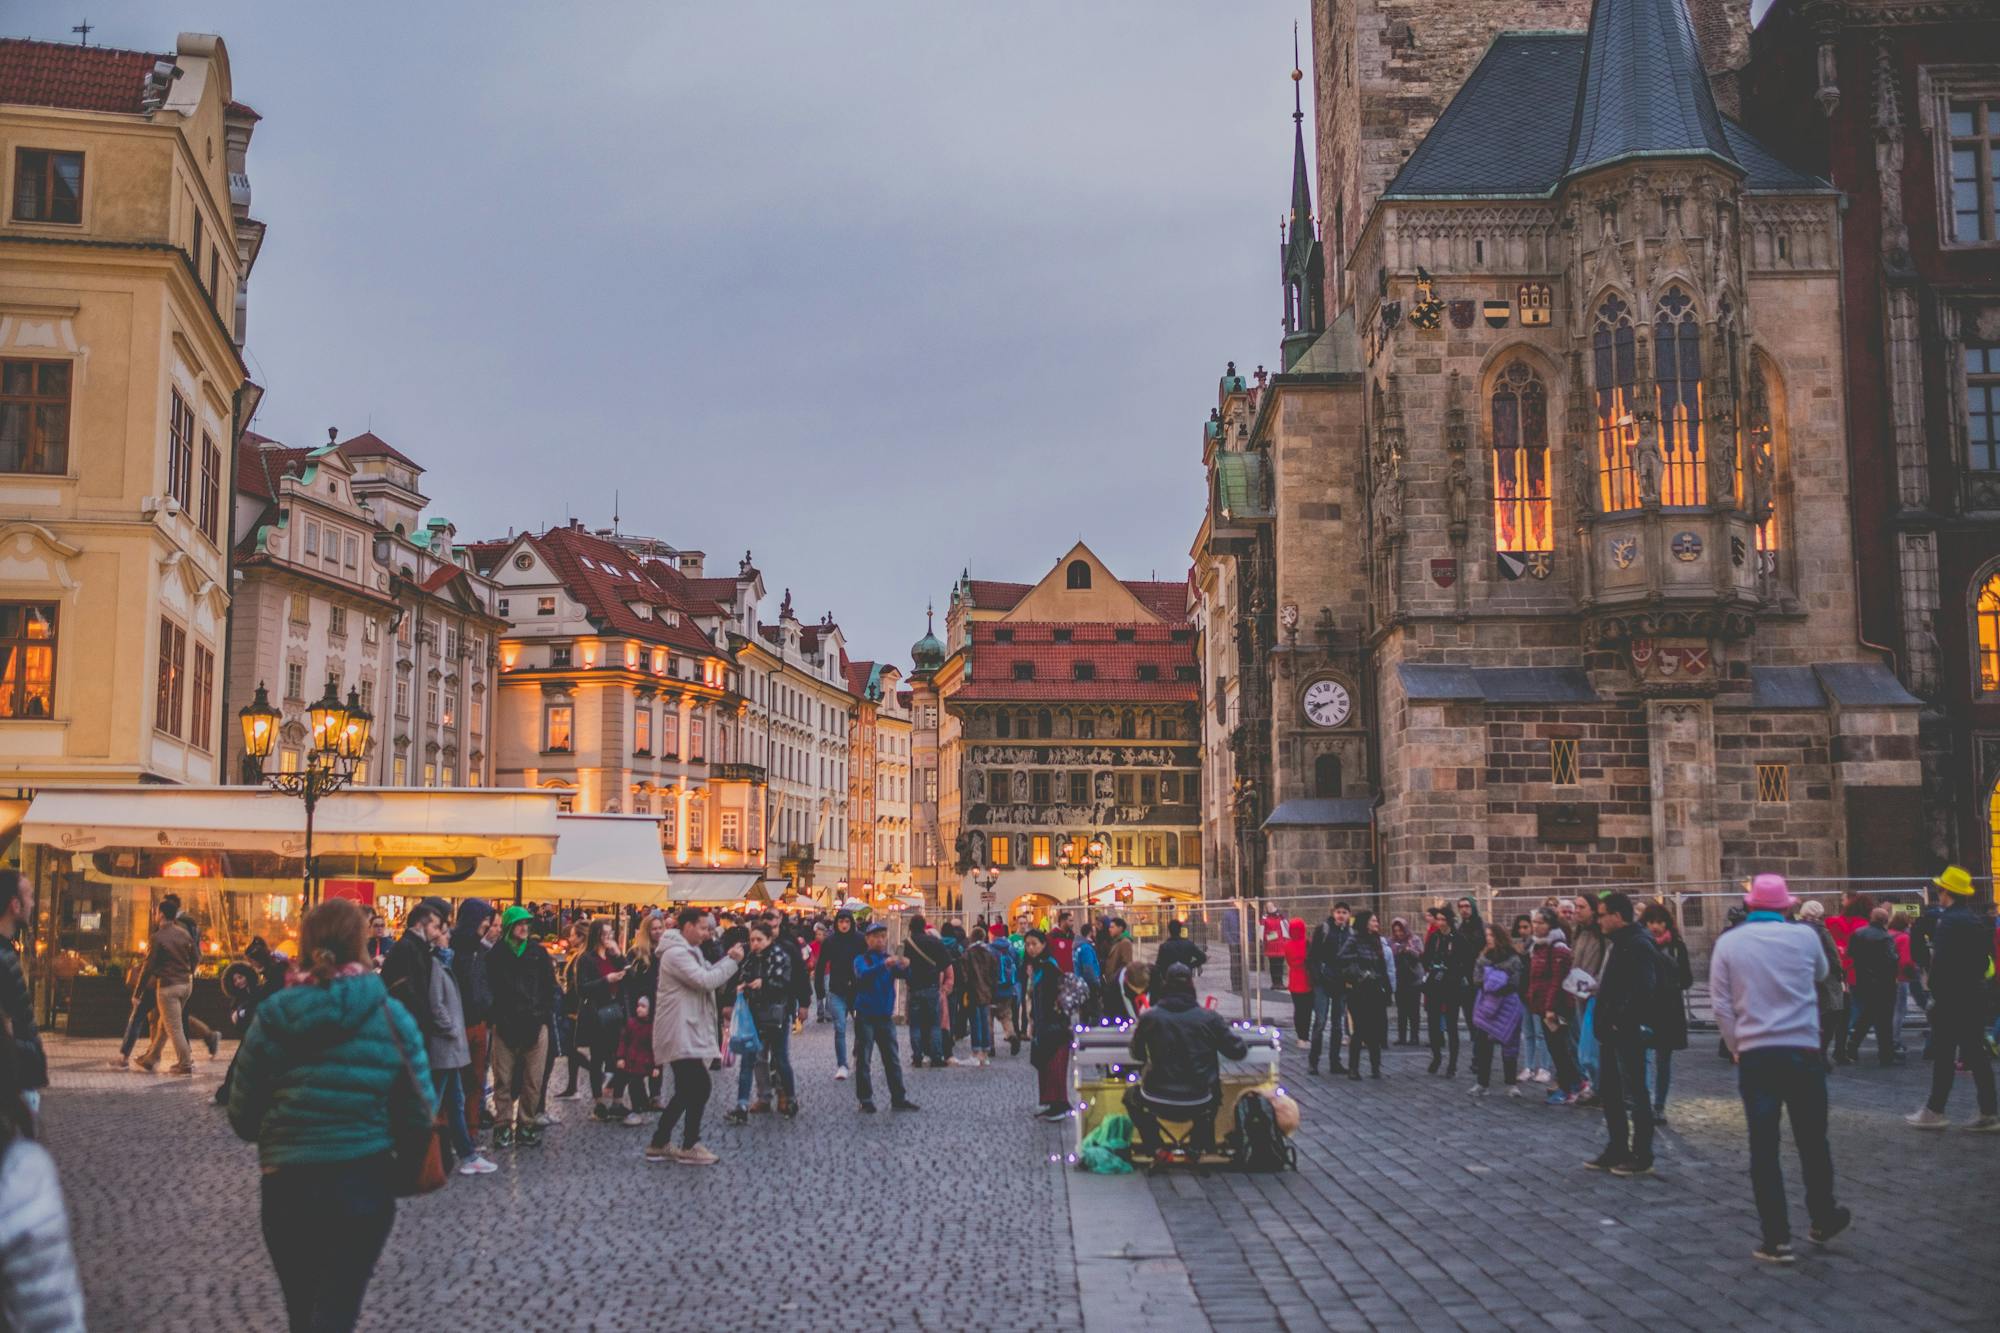 Innenstadt von Prag mit dem Prager Rathaus, Straßenmusikern und zahlreichen Besucher:innen.